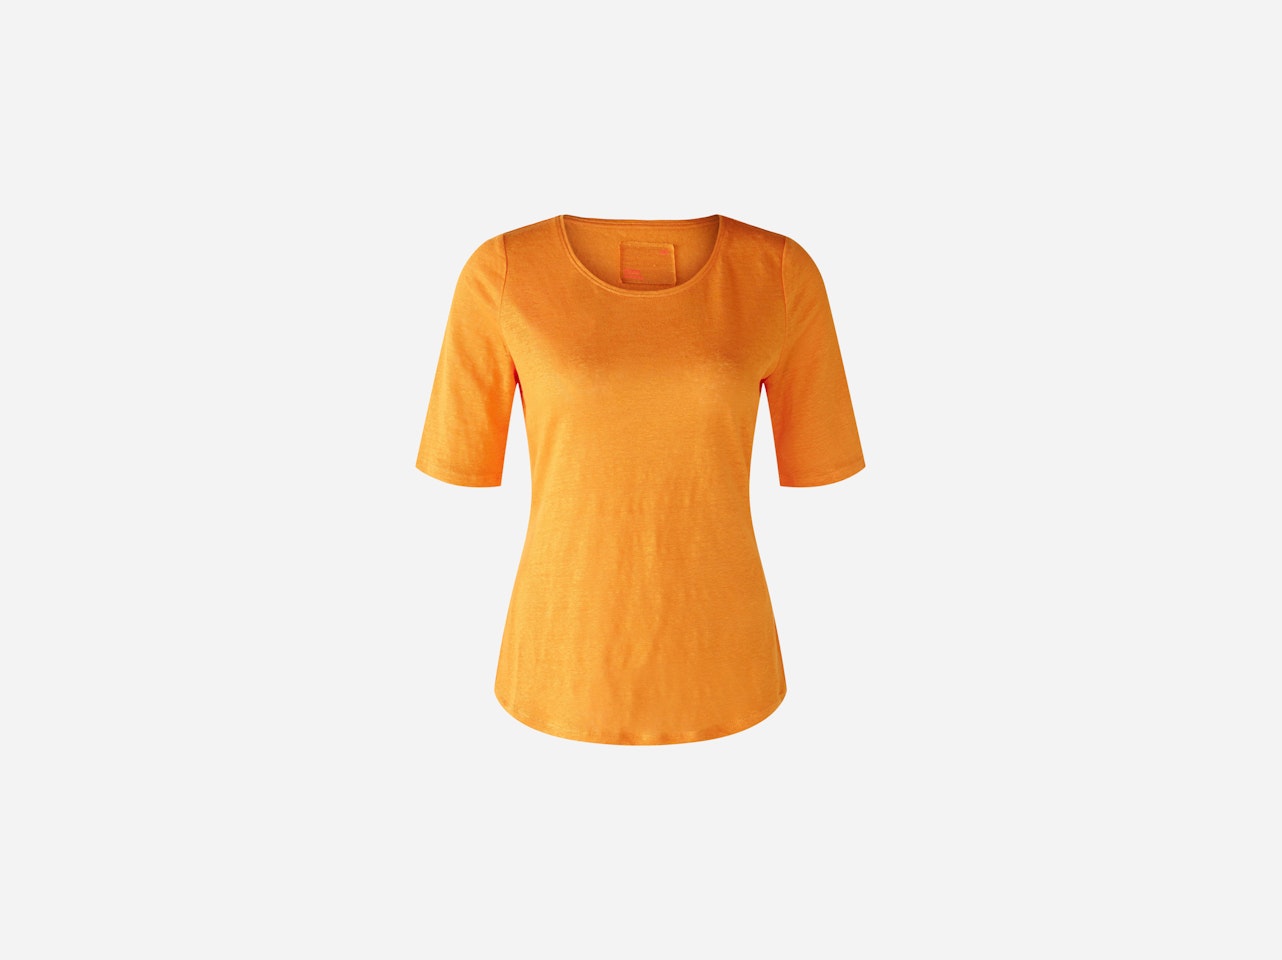 Bild 1 von T-shirt 100% linen in flame orange | Oui